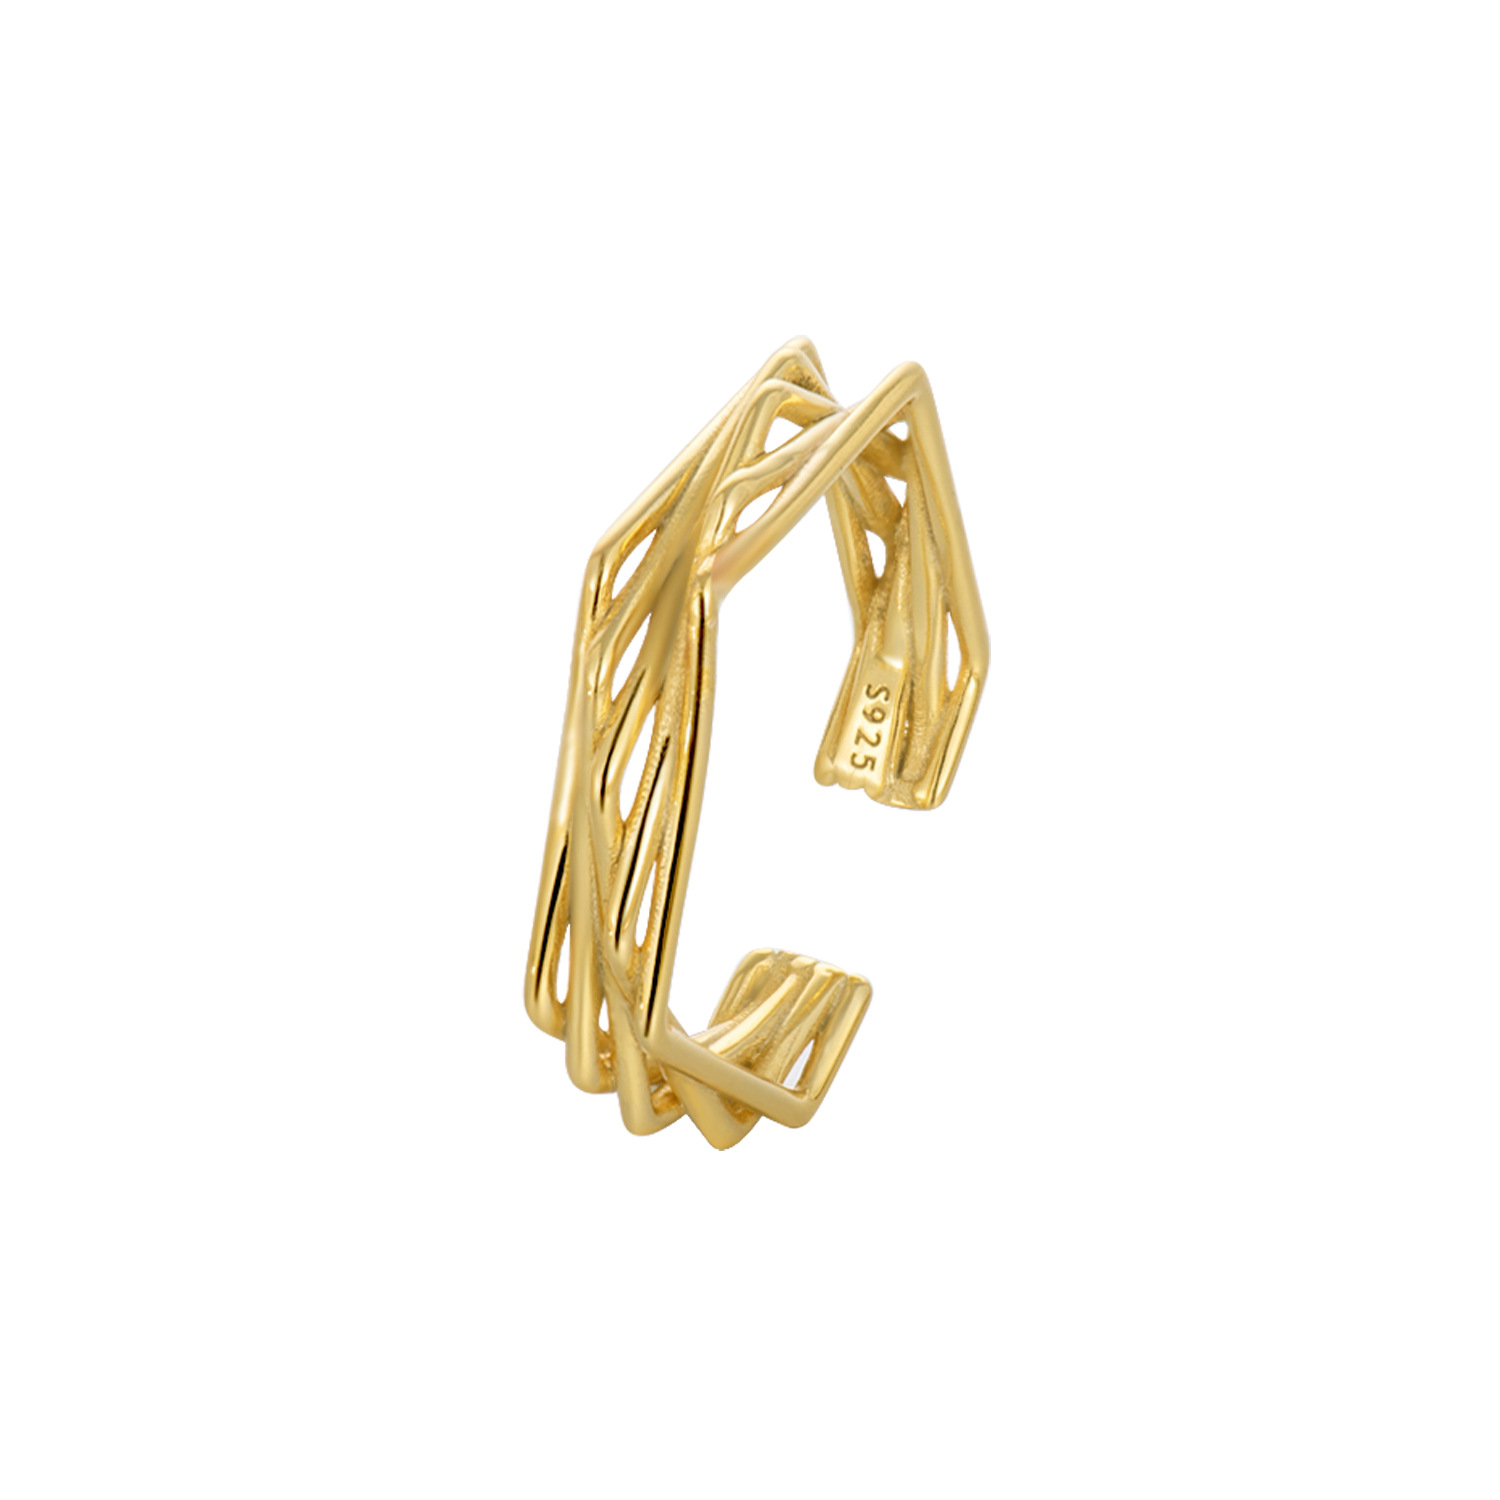 2:gul guld